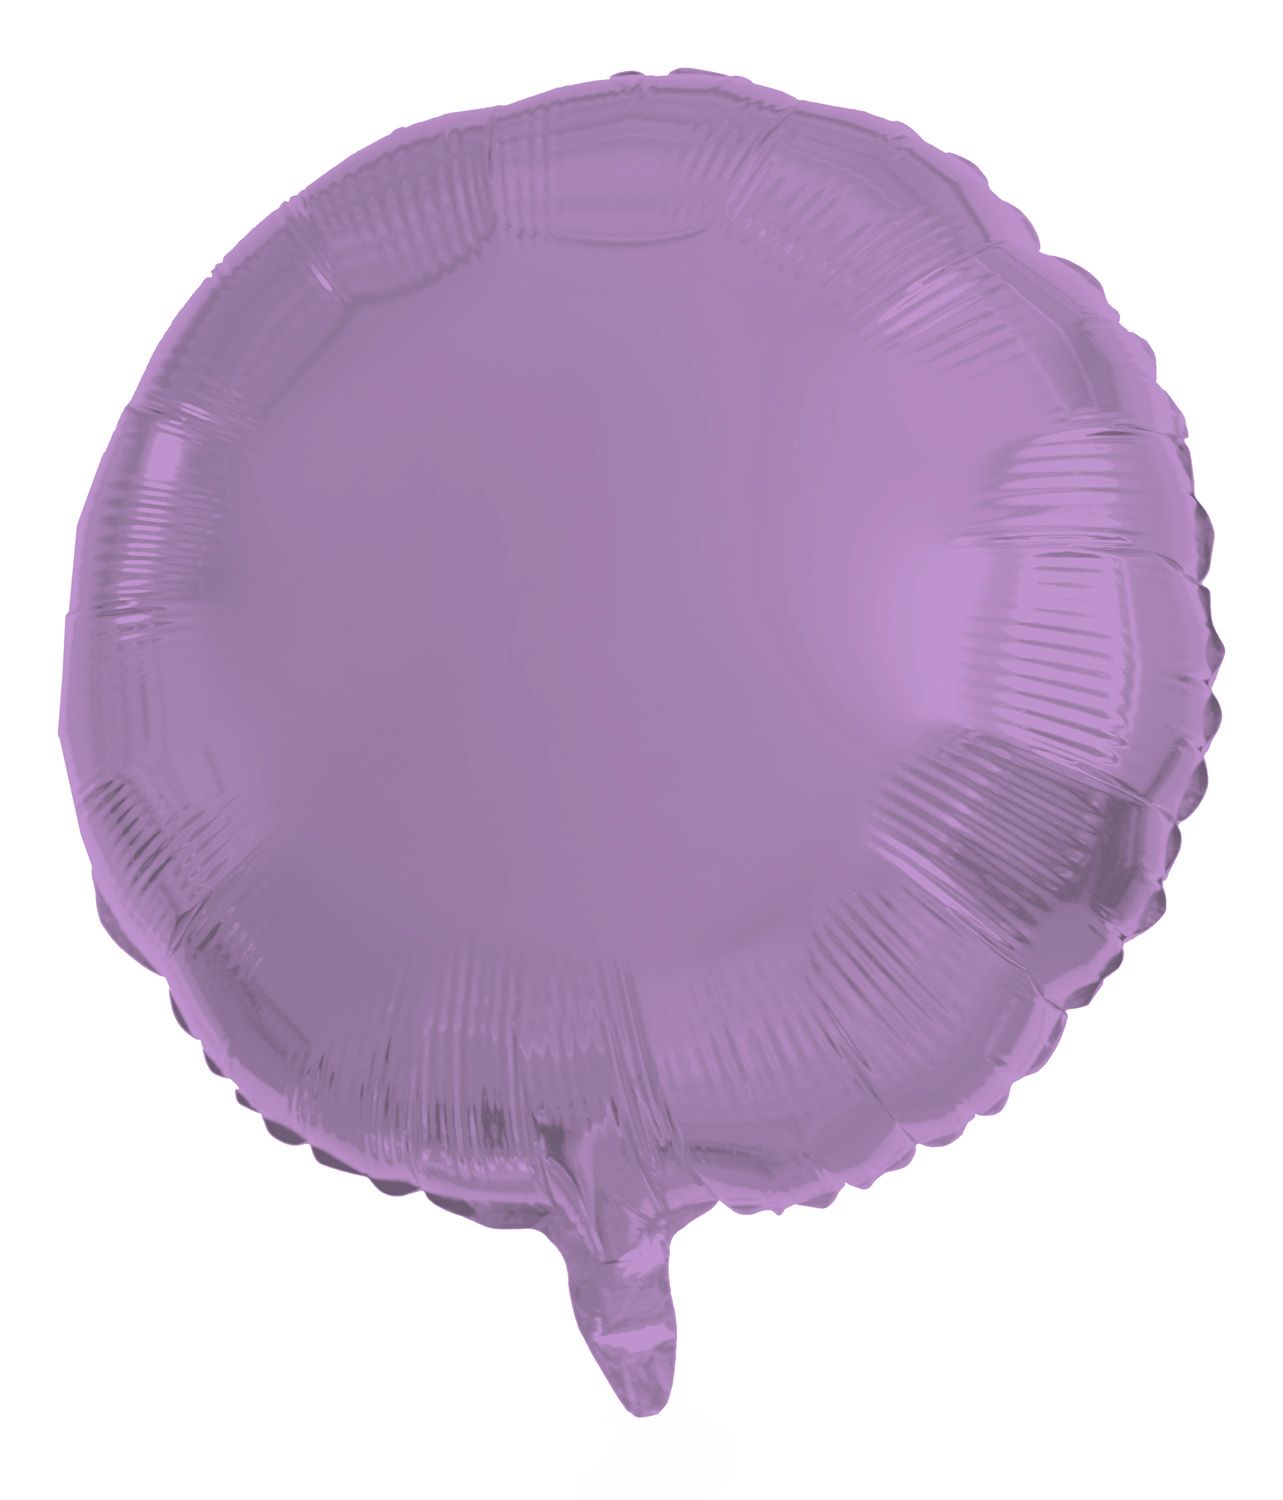 Ronde folieballon 45cm metallic paars